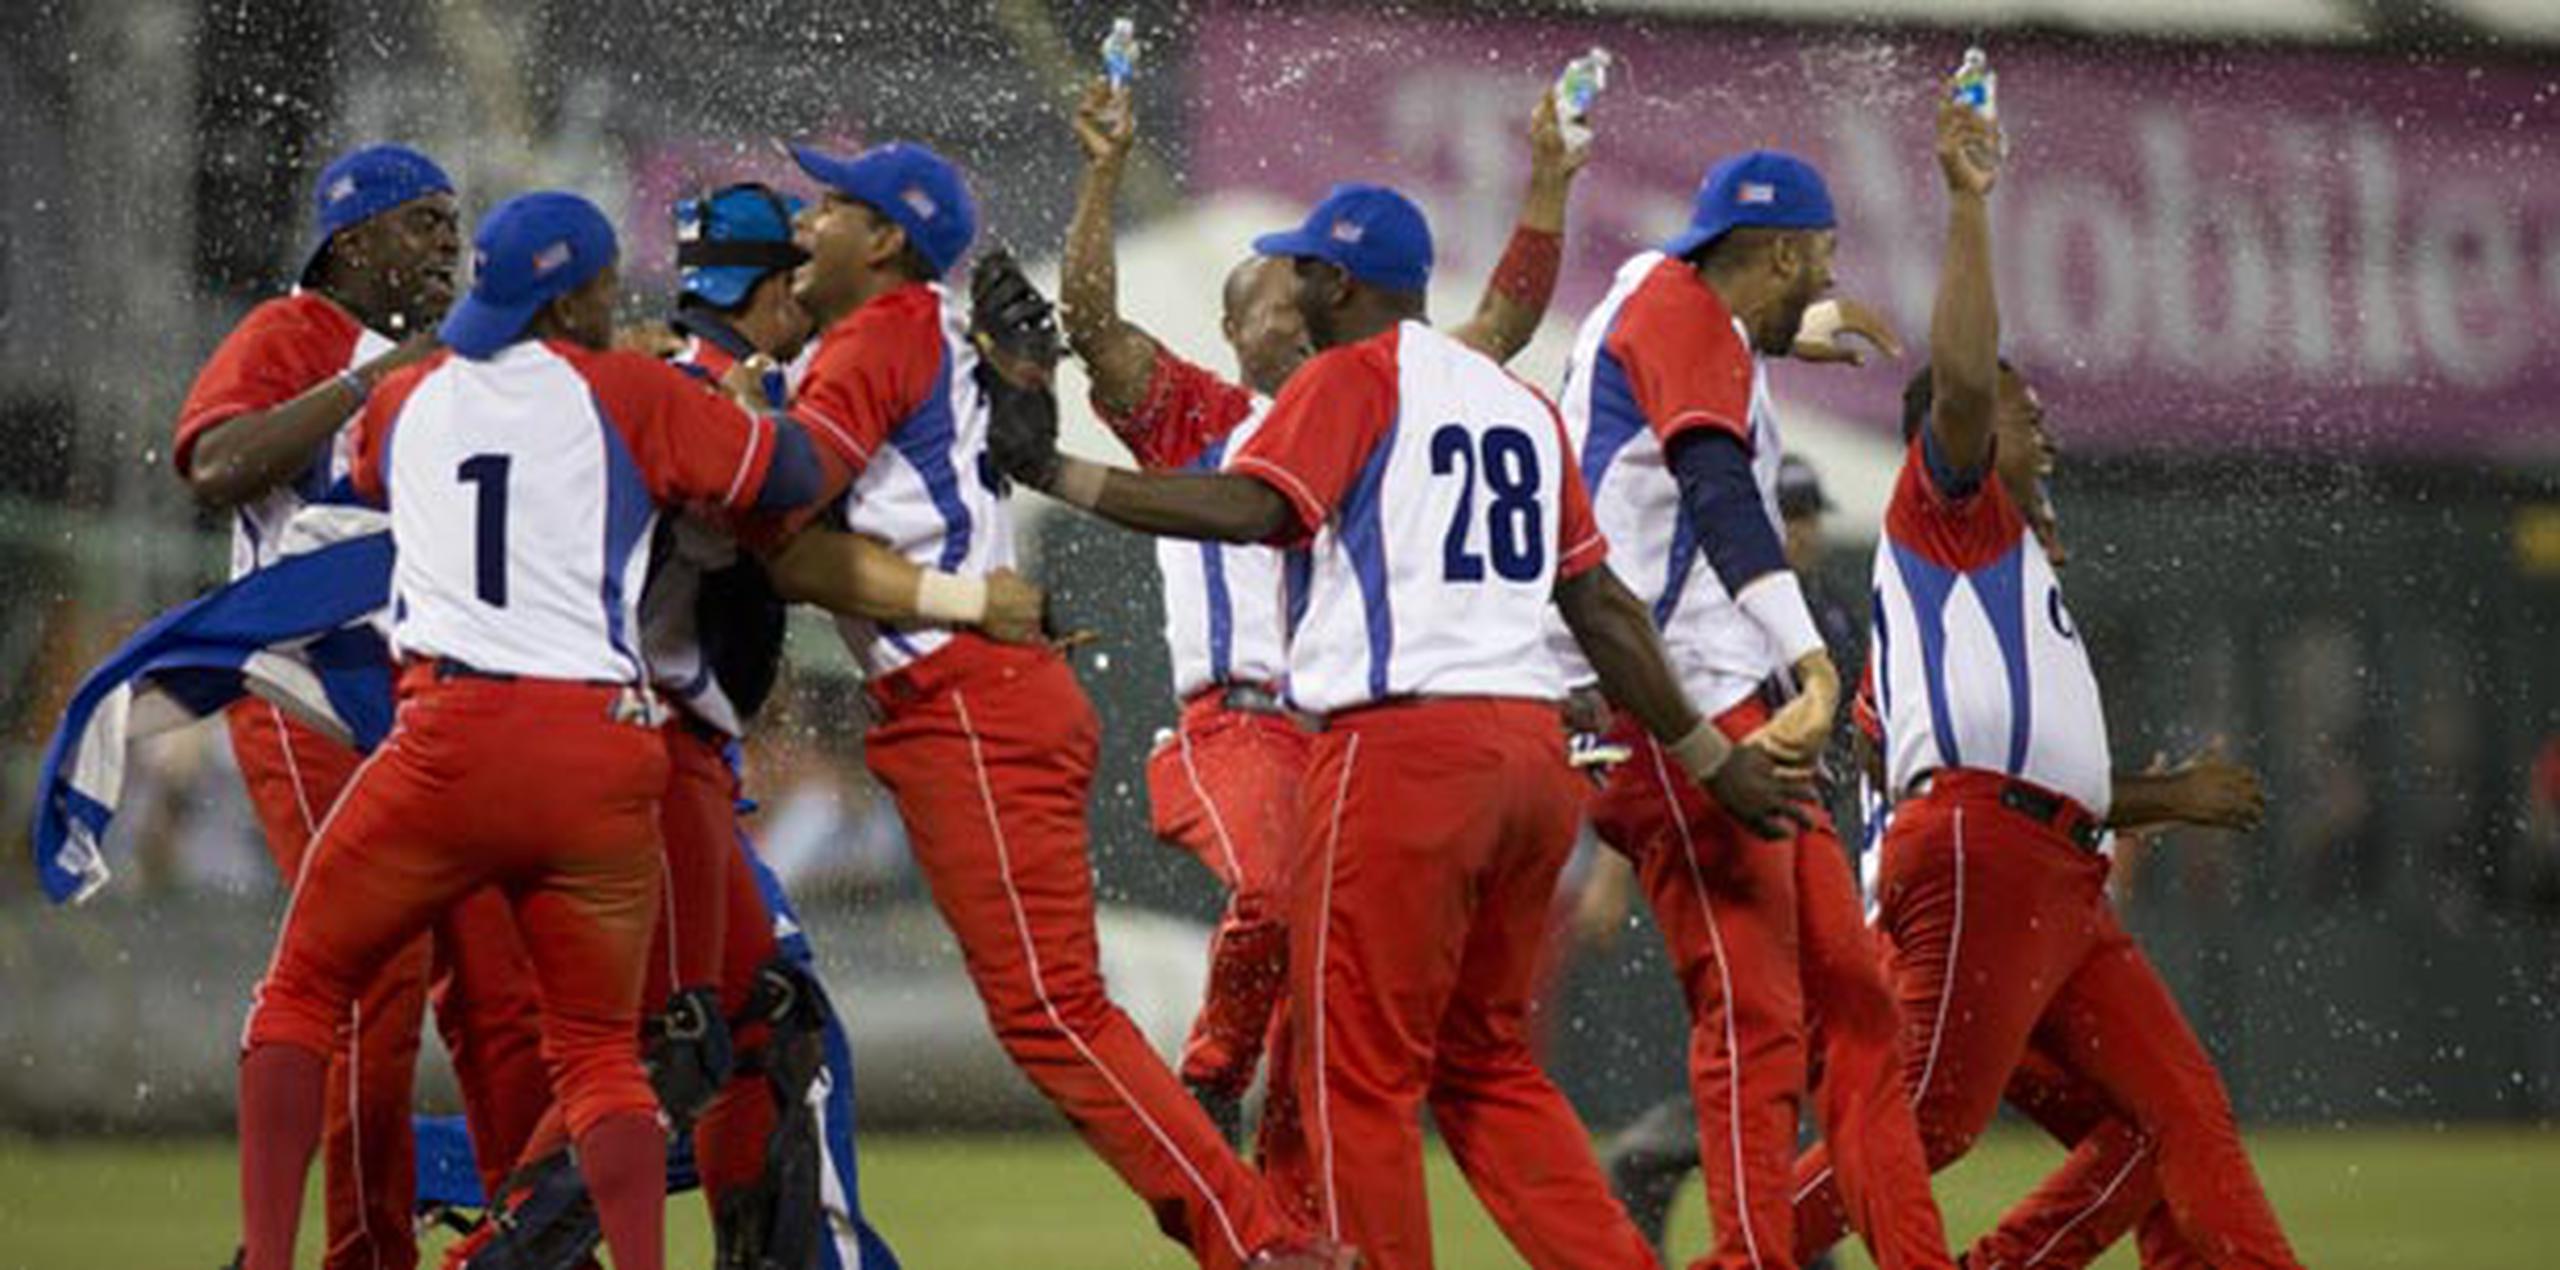 Los jugadores de Pinar del Río dan rienda suelta a la celebración tras propinar el out número 27 del partido contra los Tomateros de Culiacán.  (tonito.zayas@gfrmedia.com)